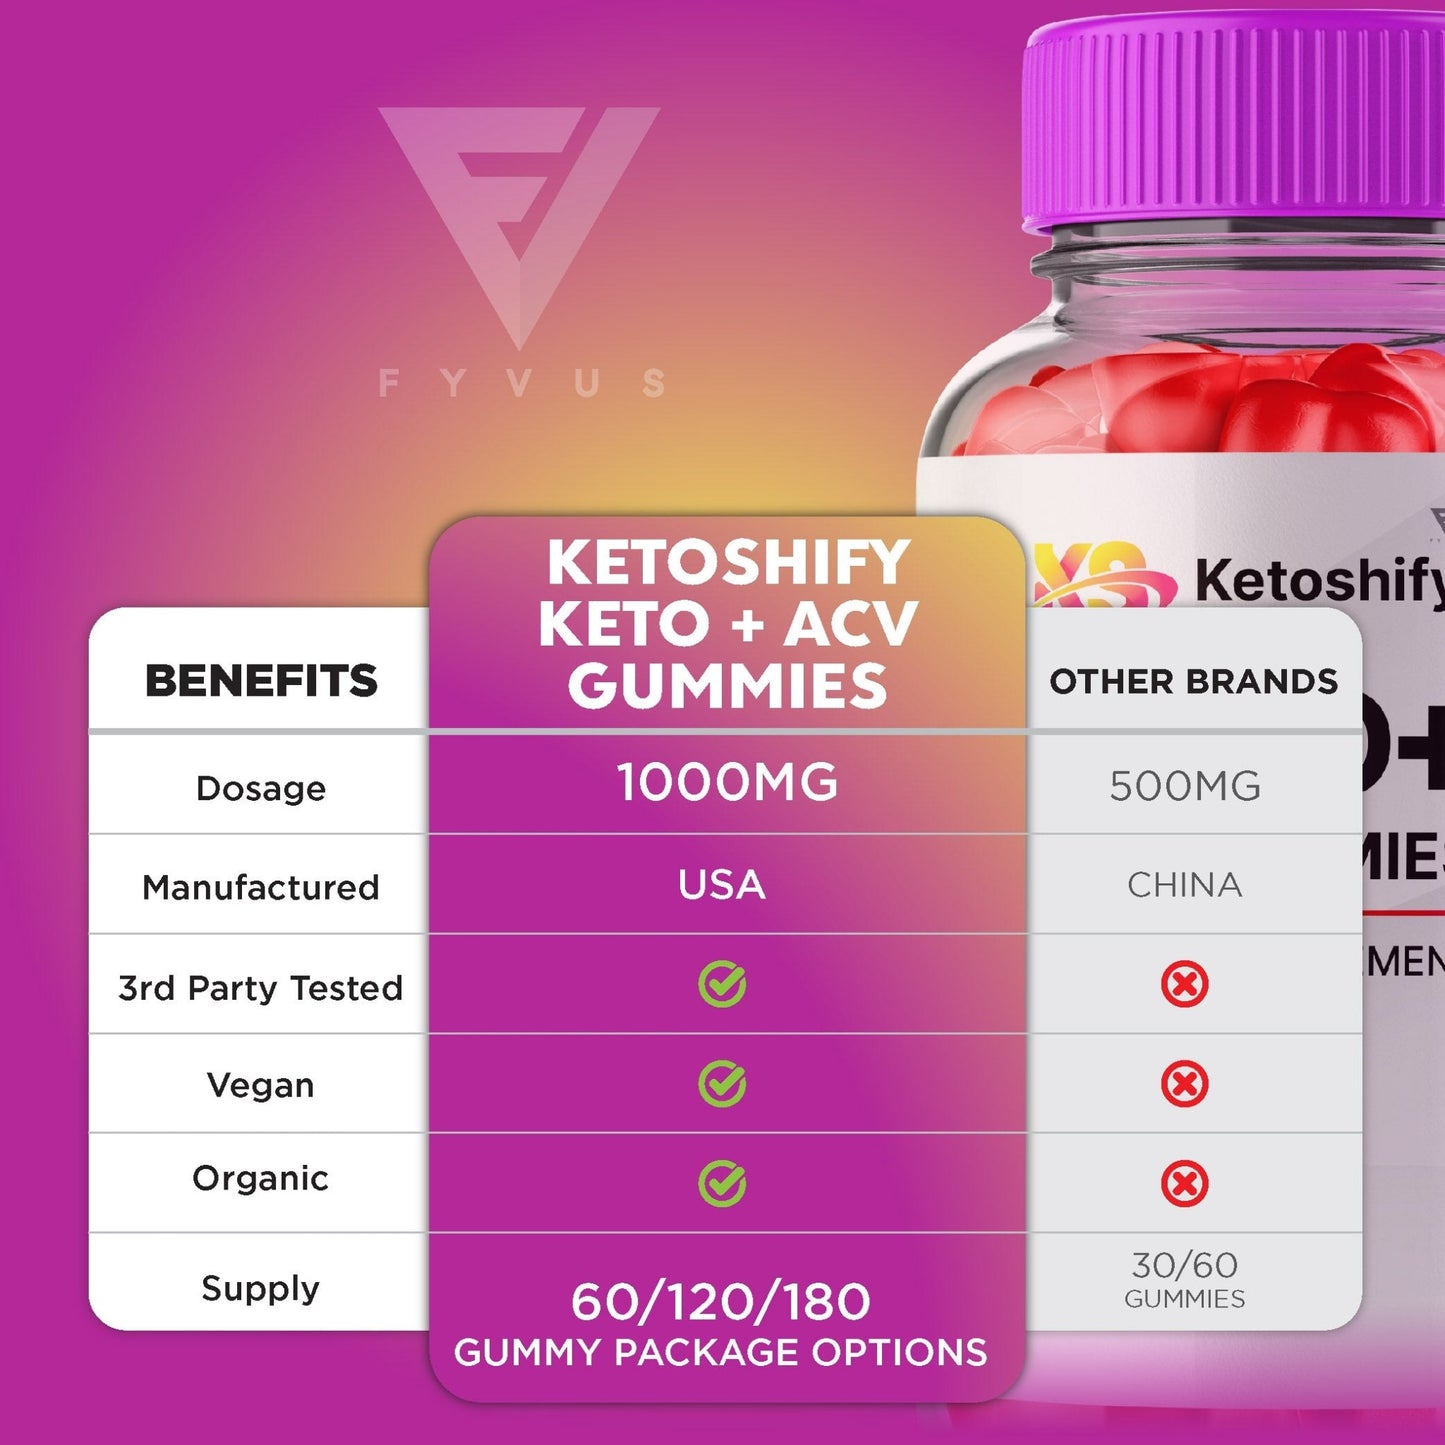 Ketoshify - Keto ACV Gummies - Vitamin Place